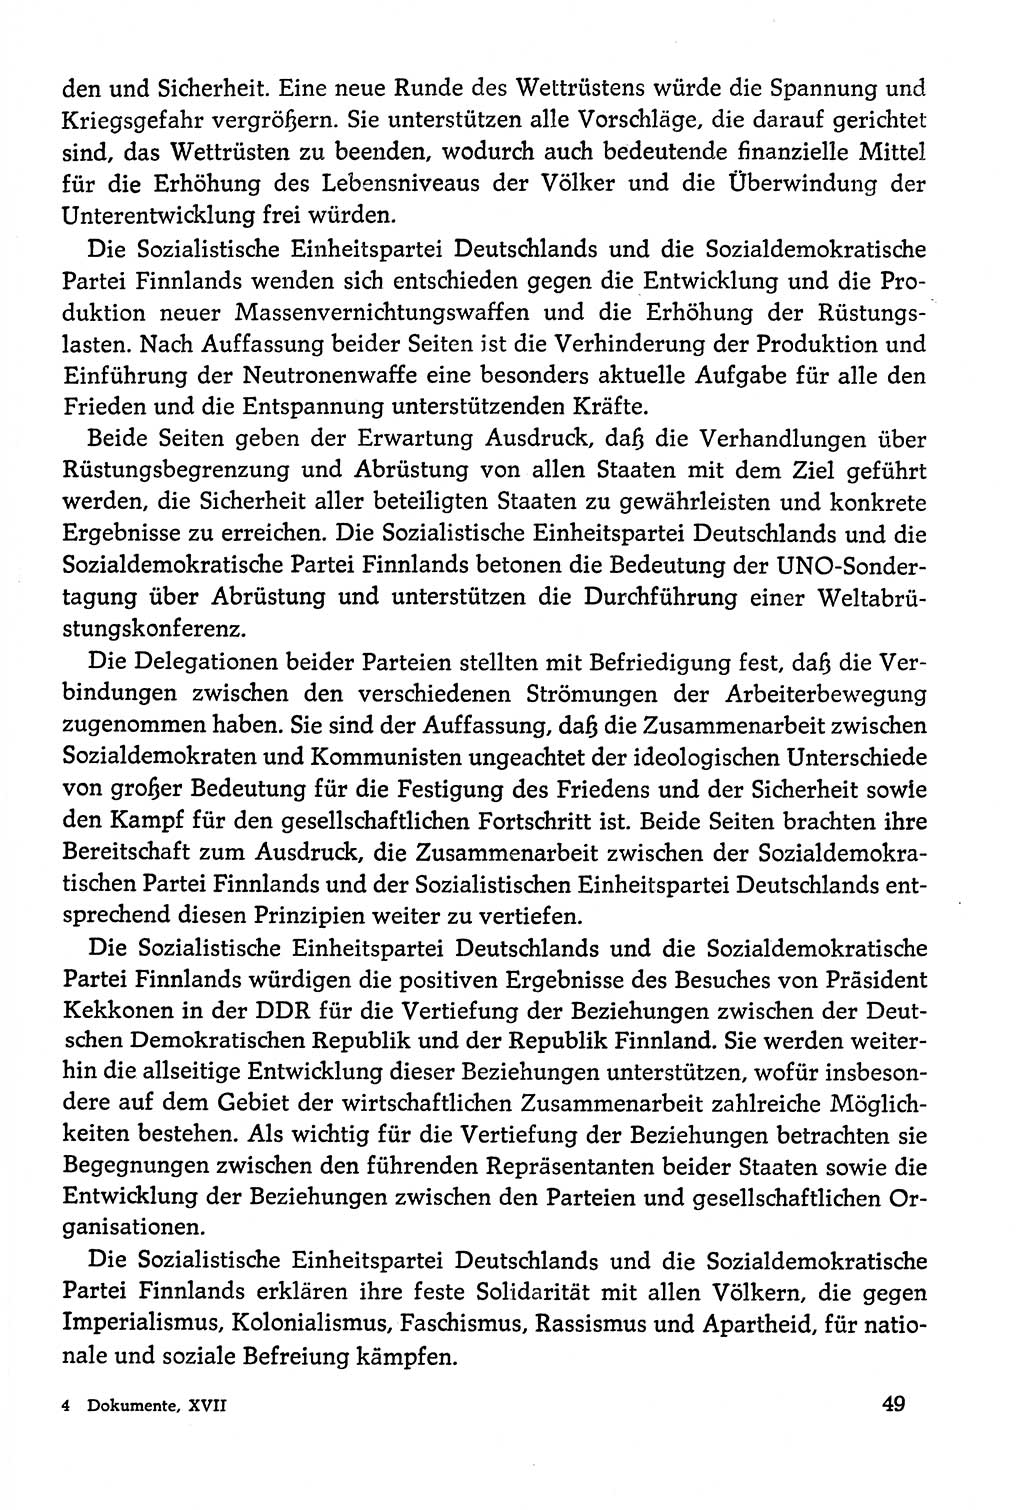 Dokumente der Sozialistischen Einheitspartei Deutschlands (SED) [Deutsche Demokratische Republik (DDR)] 1978-1979, Seite 49 (Dok. SED DDR 1978-1979, S. 49)